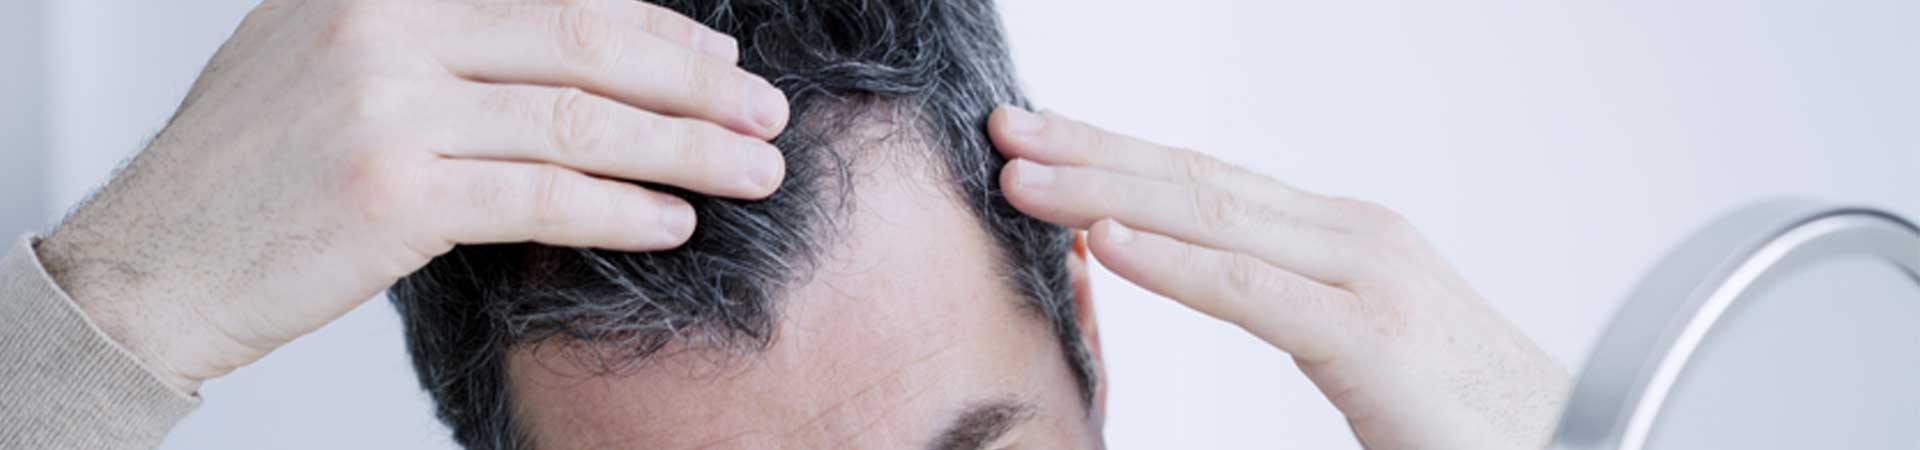 Hair Loss Consultation & Diagnosis